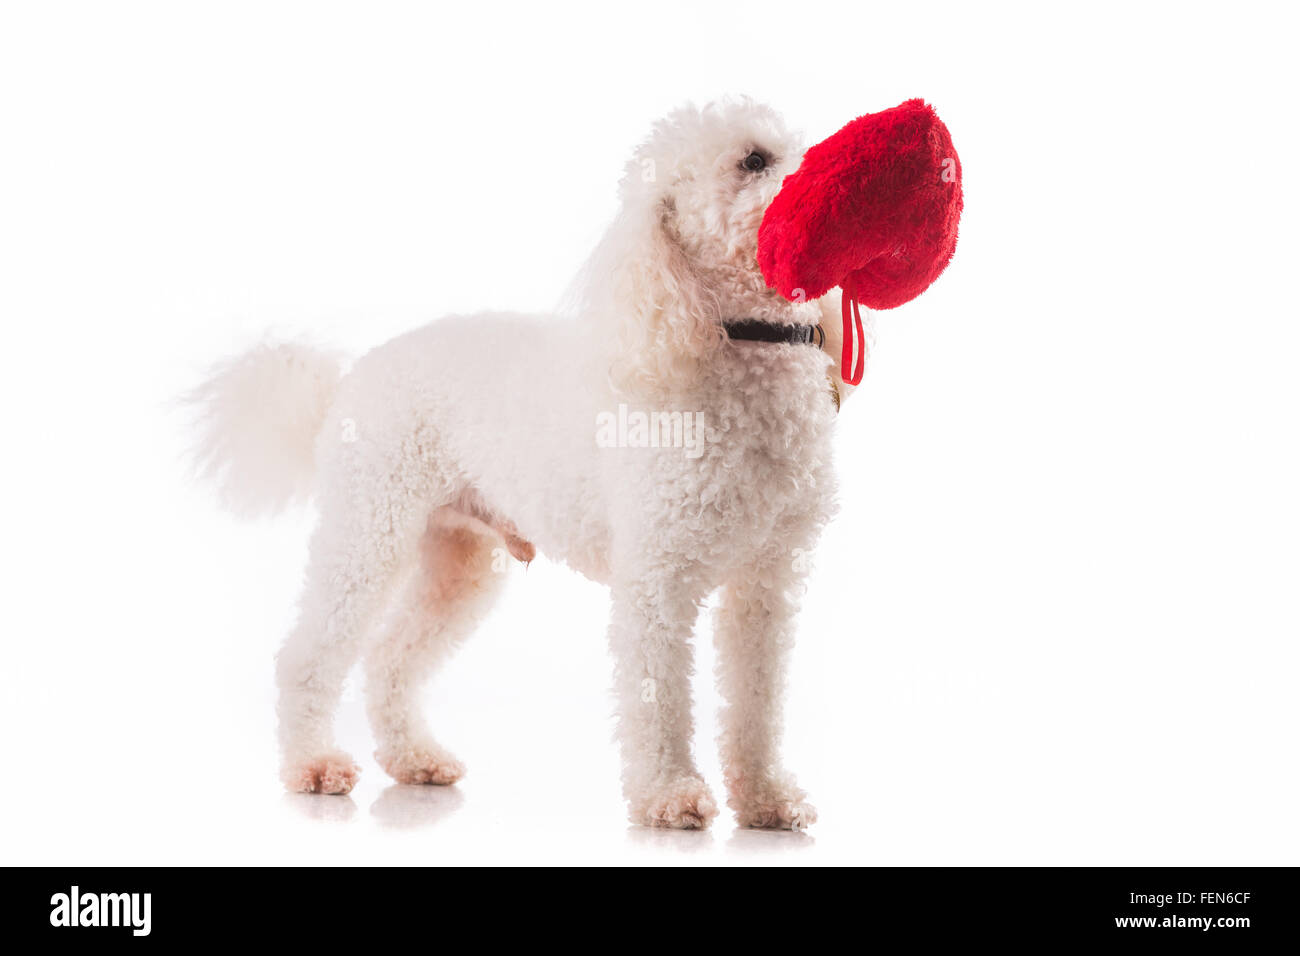 Niedlichen Welpen Hund mit einem roten Herz isoliert auf weißem Hintergrund. Stockfoto